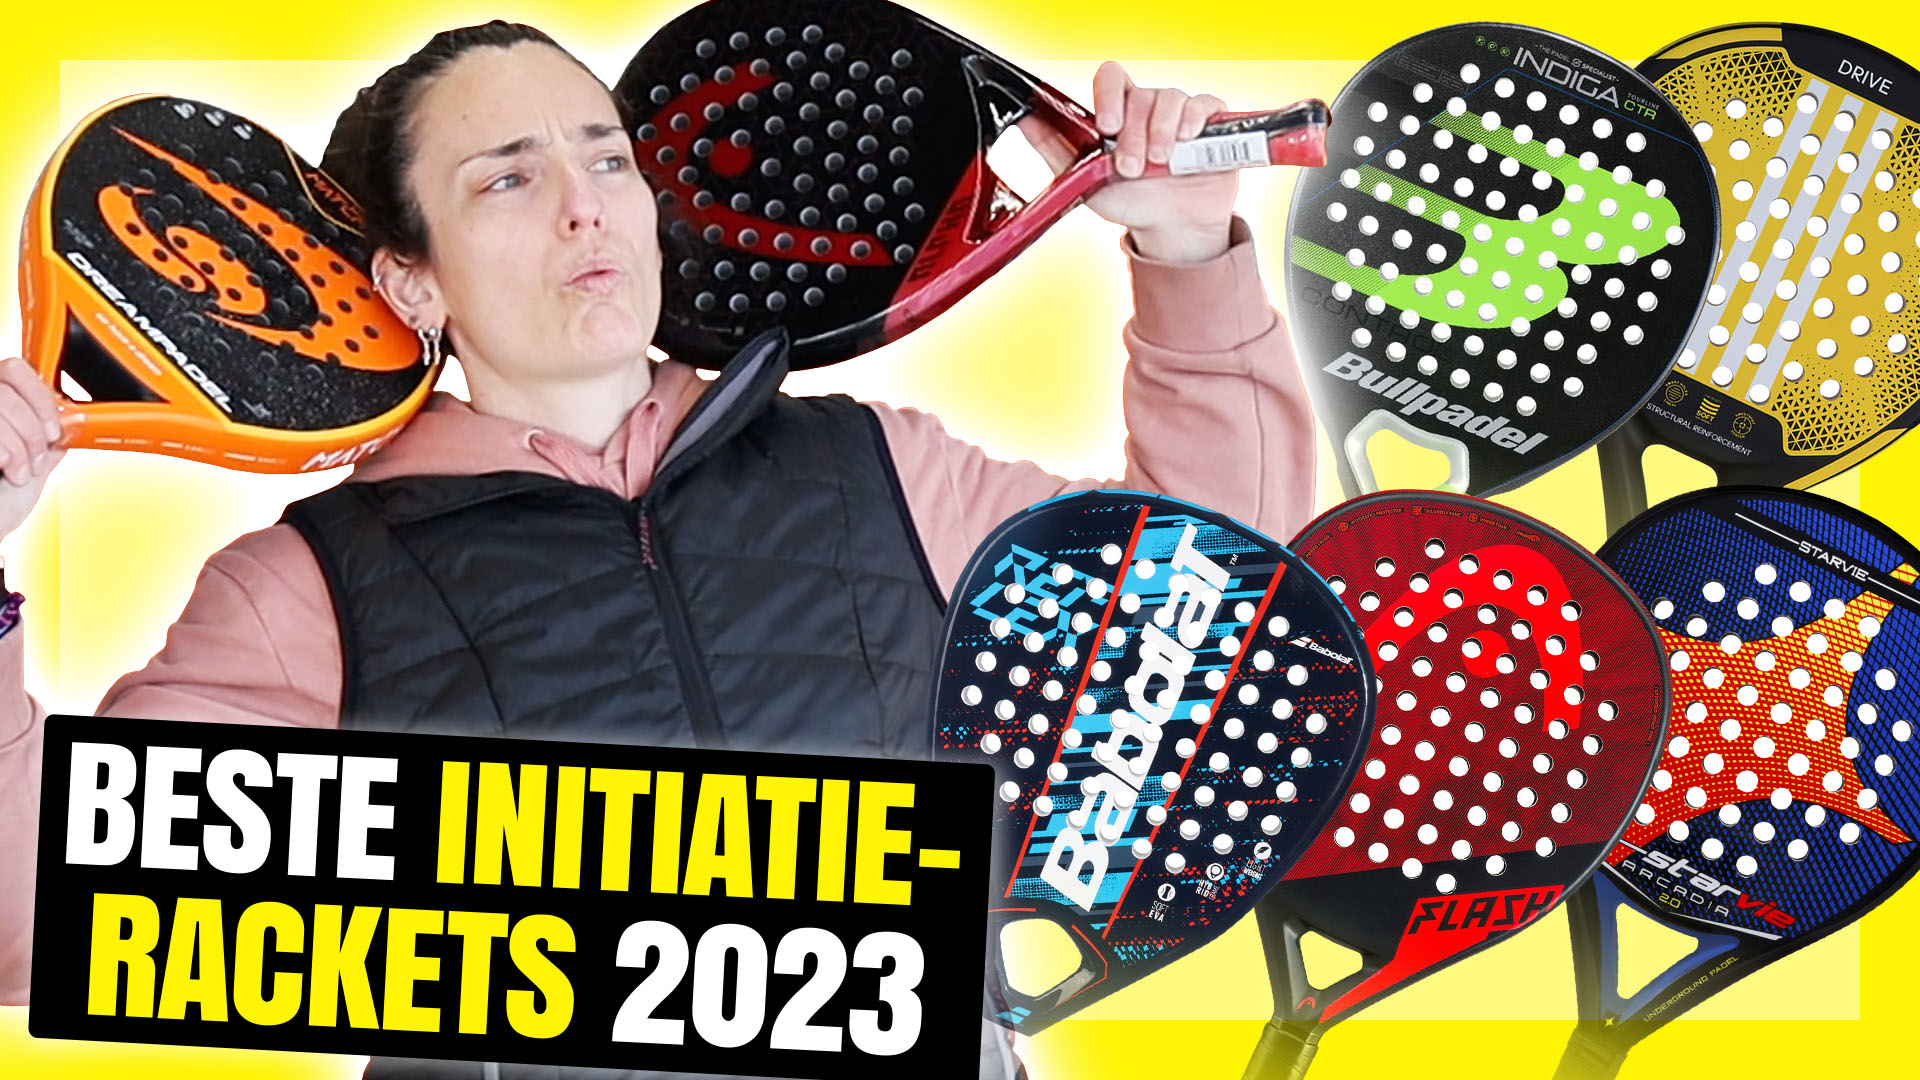 Beste initiatie padel rackets 2023, het beste voor beginners